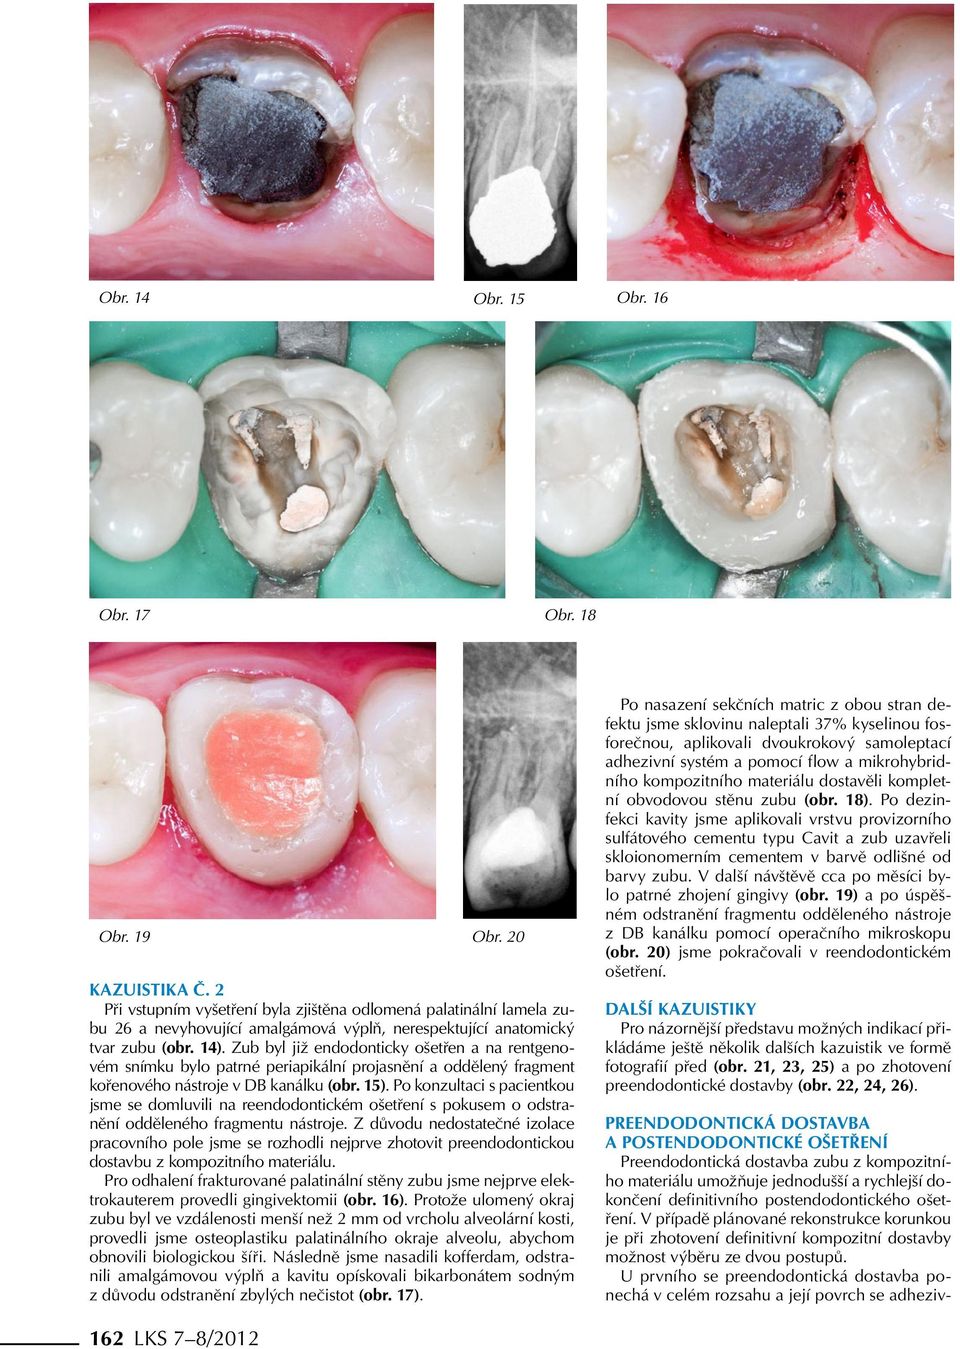 Zub byl již endodonticky ošetřen a na rentgenovém snímku bylo patrné periapikální projasnění a oddělený fragment kořenového nástroje v DB kanálku (obr. 15).